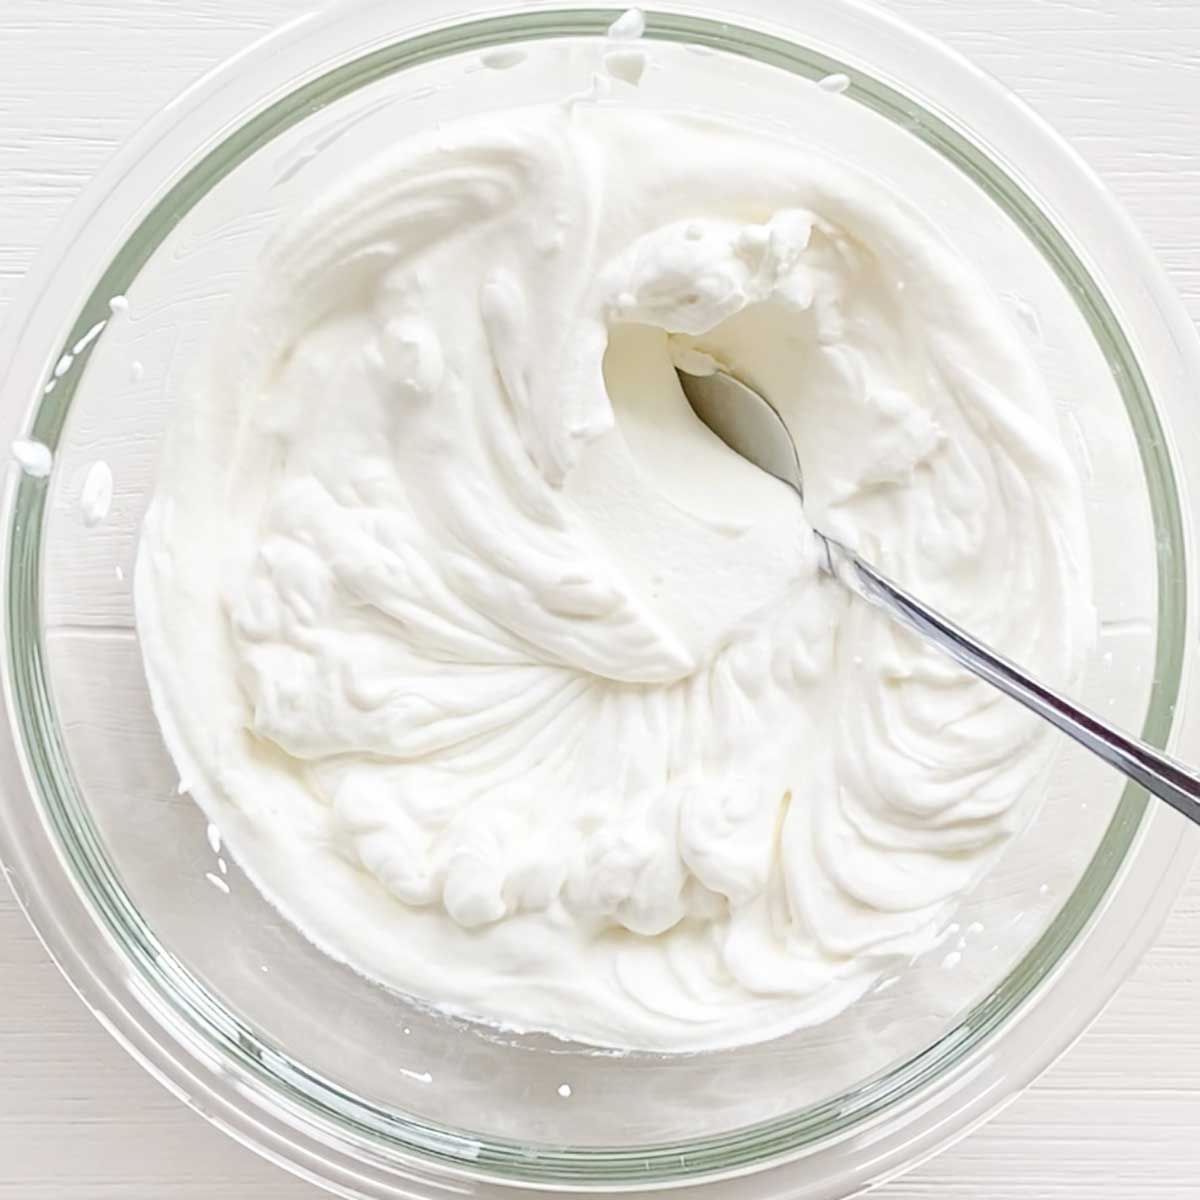 How to Make Vegan Vanilla Whipped Cream (Dairy-Free Chantilly Cream) - Vegan Chocolate Whipped Cream